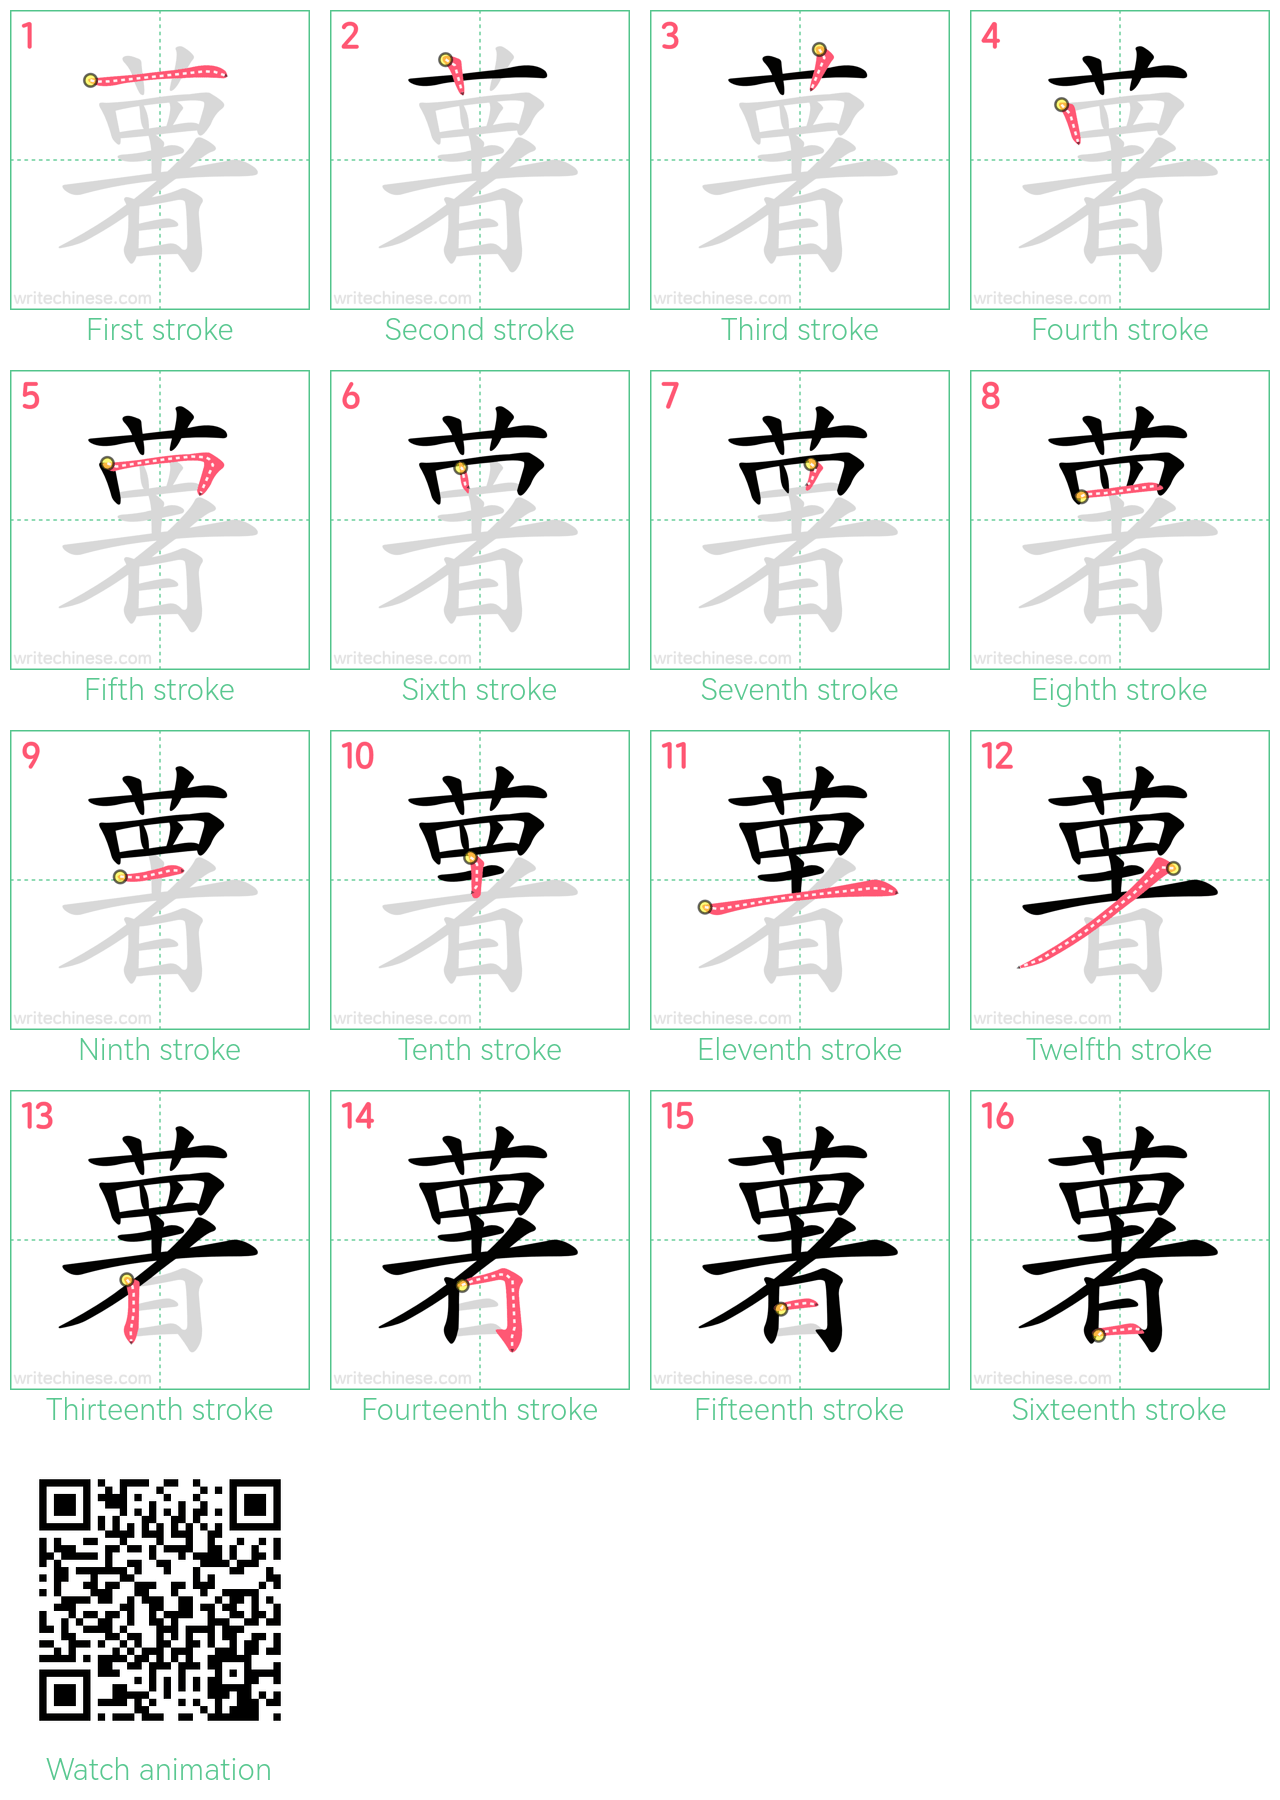 薯 step-by-step stroke order diagrams